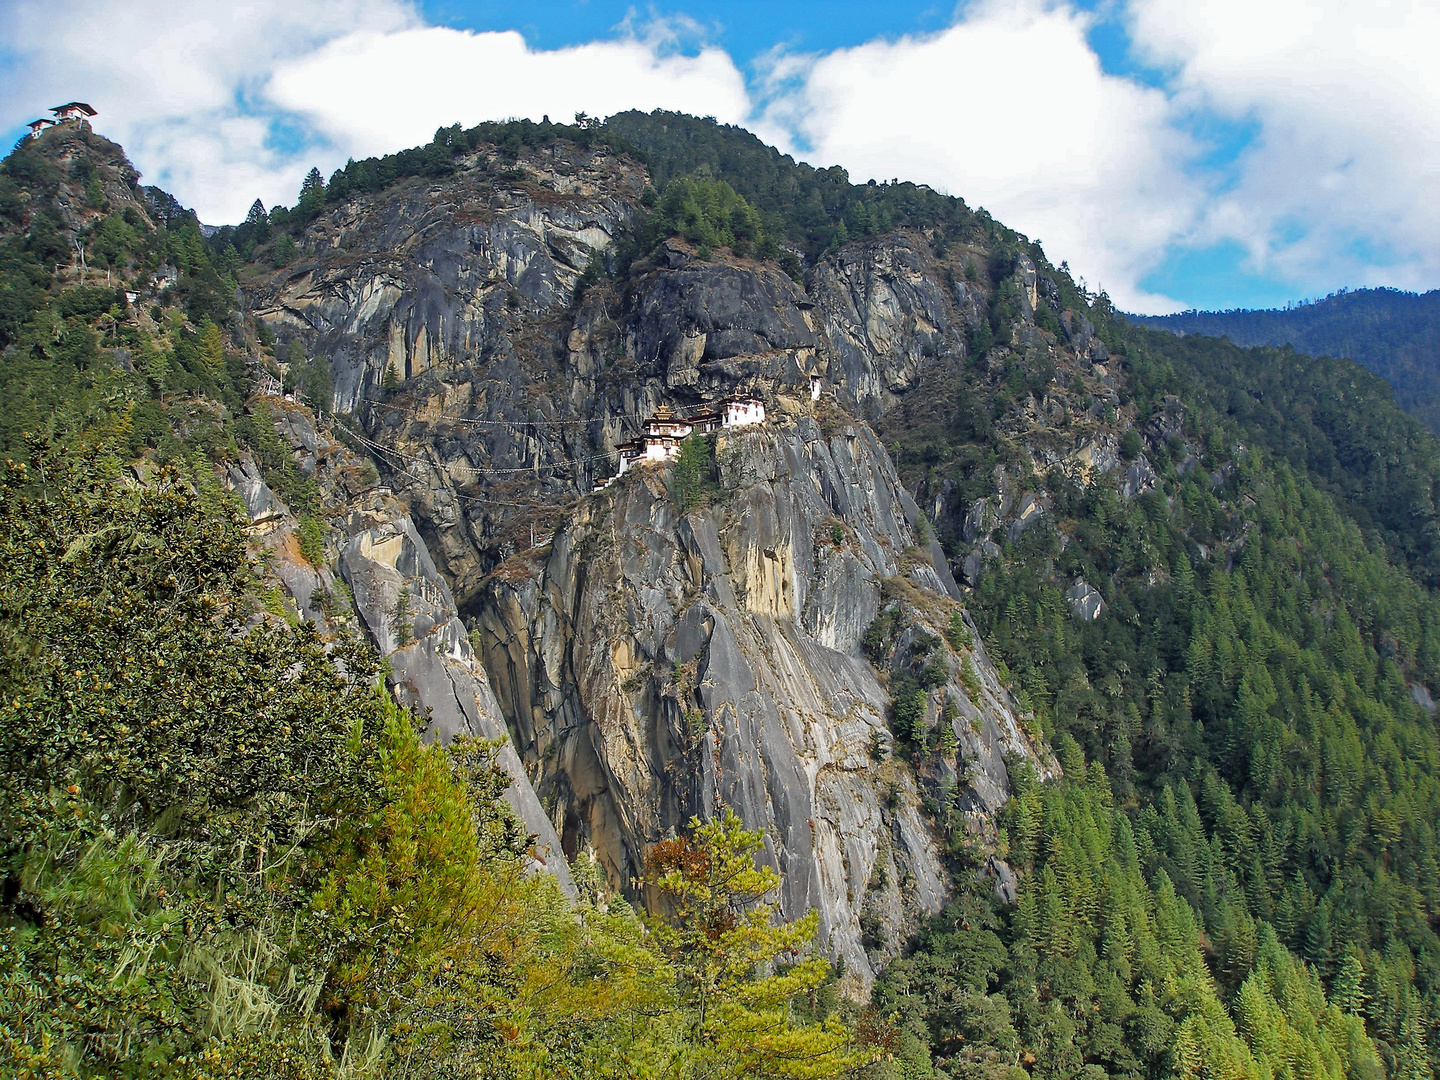 Tigernest-Kloster in 3120m Höhe